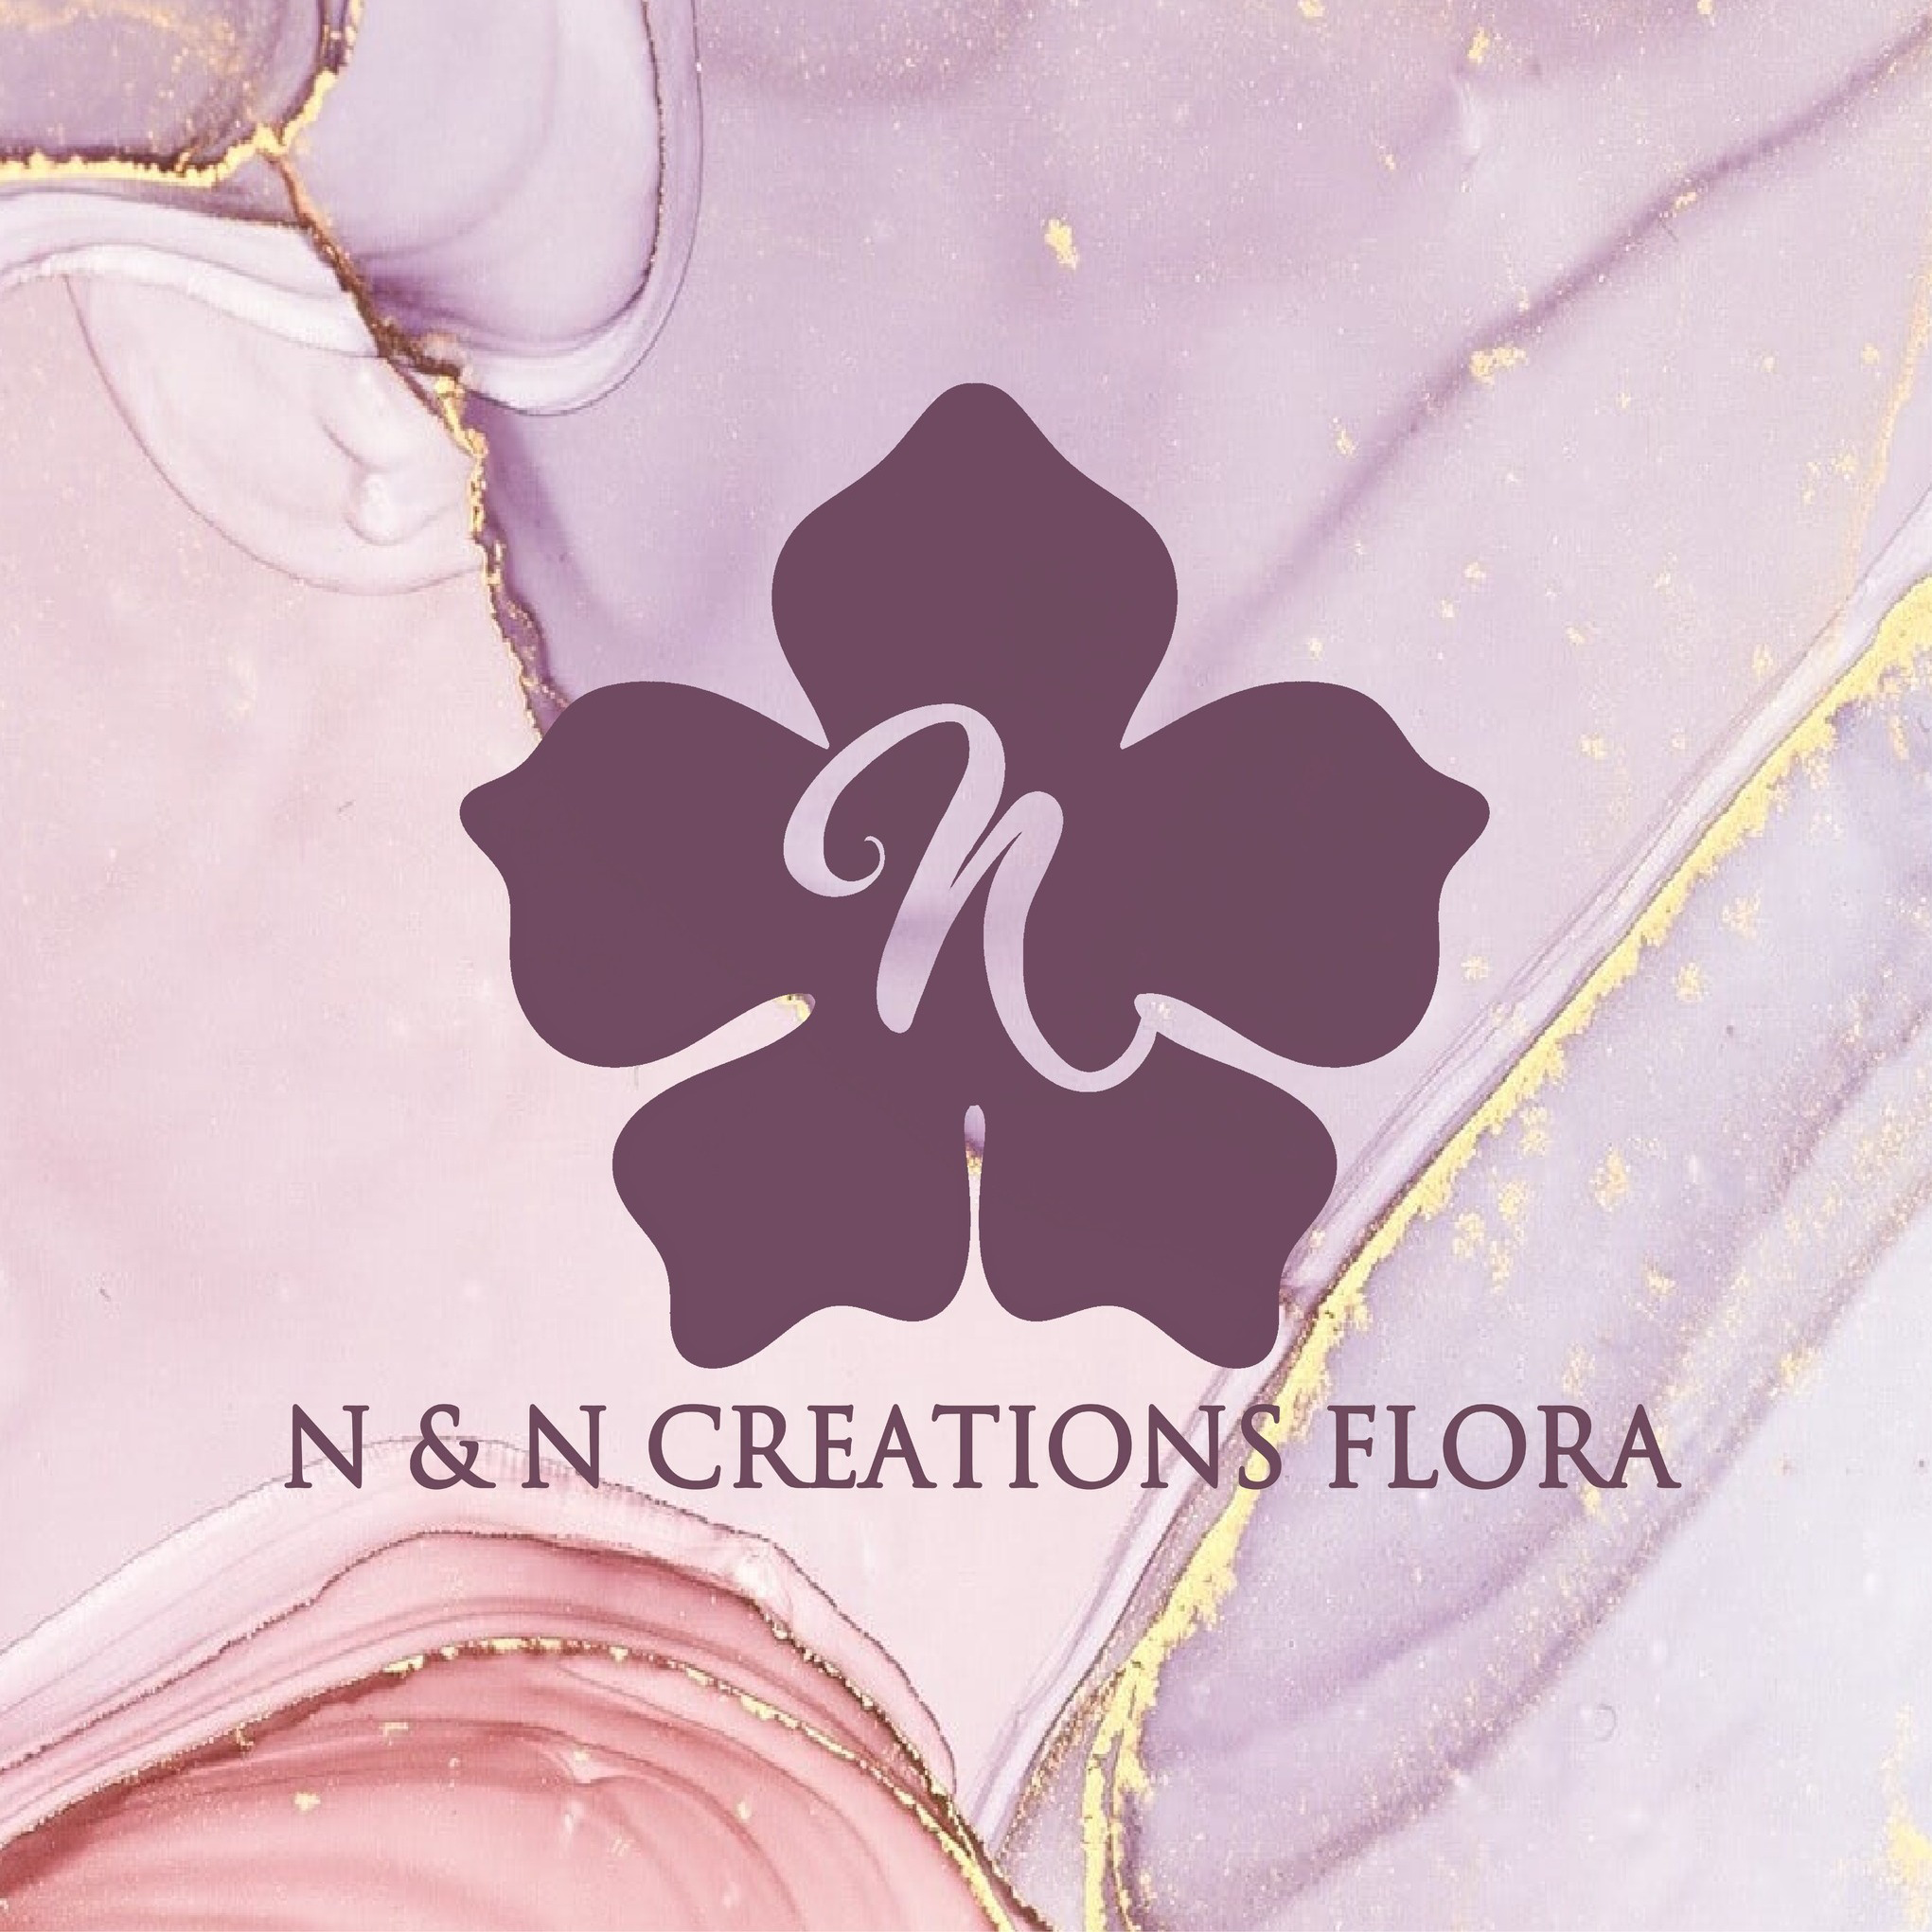 N & N Creations